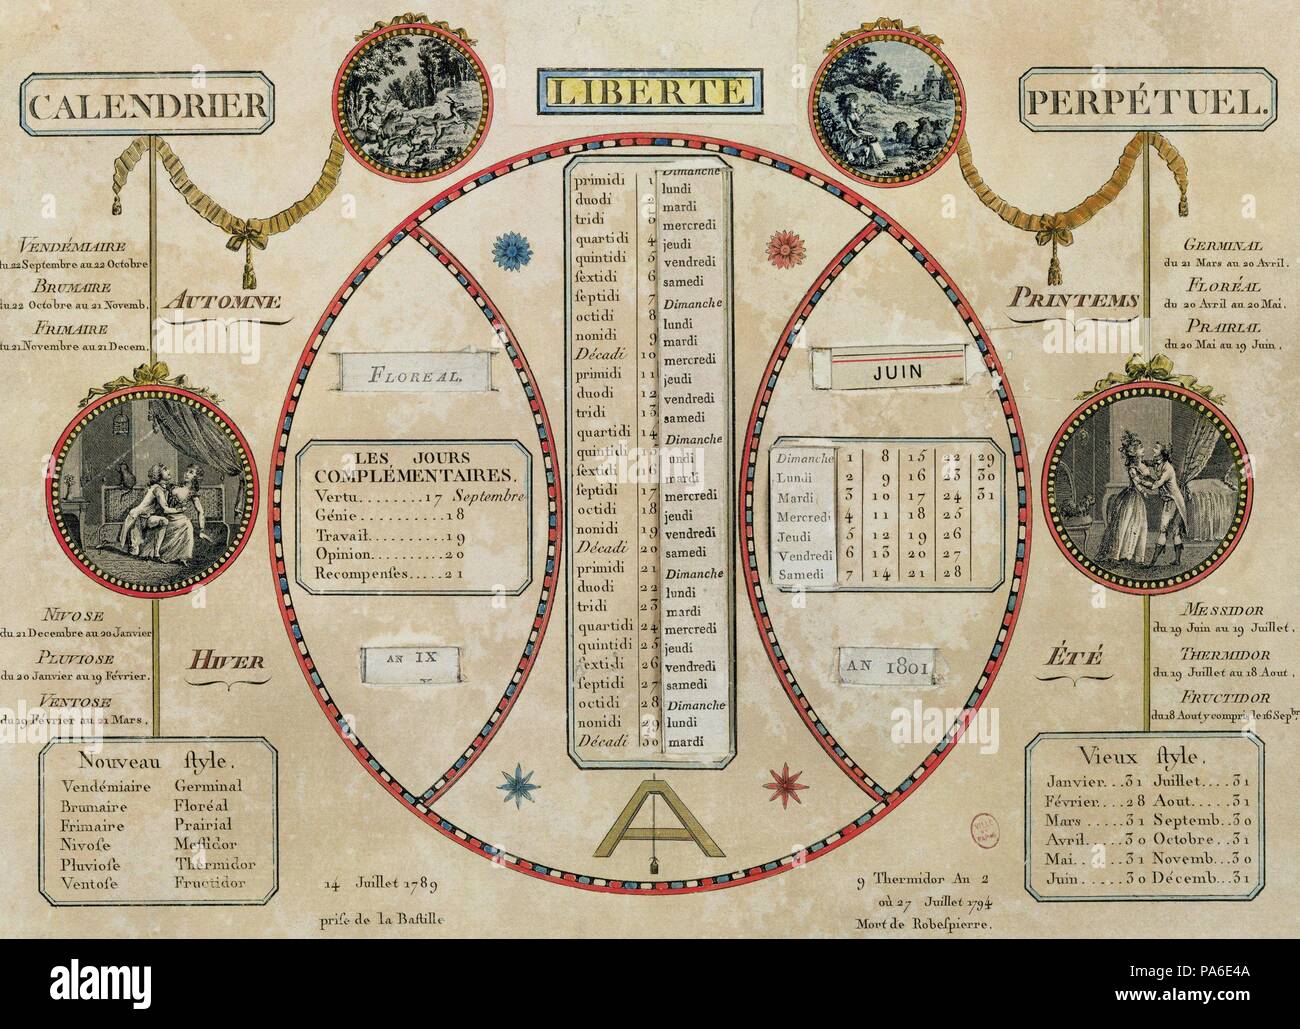 French revolutionary calendar. Museo: Collezione privata. Foto Stock